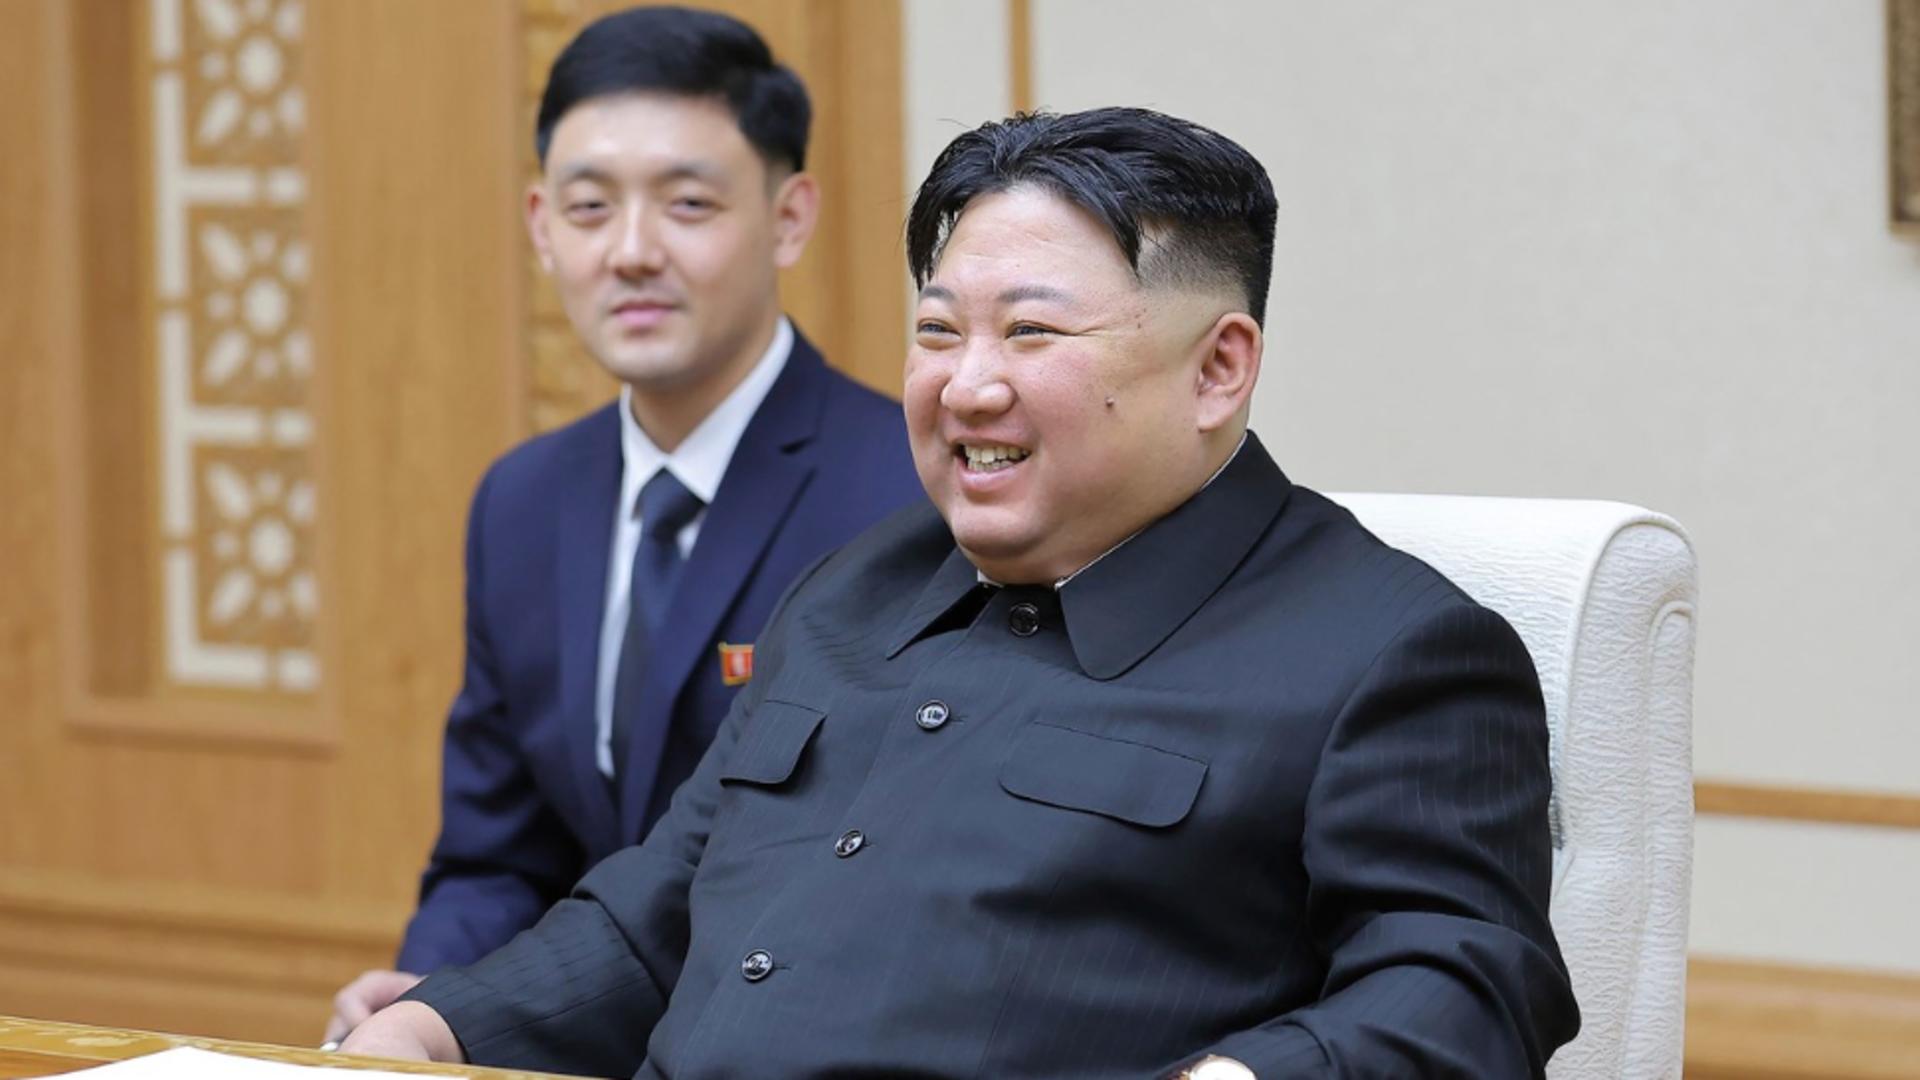 O rachetă, o zi liberă – Coreea de Nord a decretat sărbătoare legală pentru a marca testarea unei rachete intercontinentale